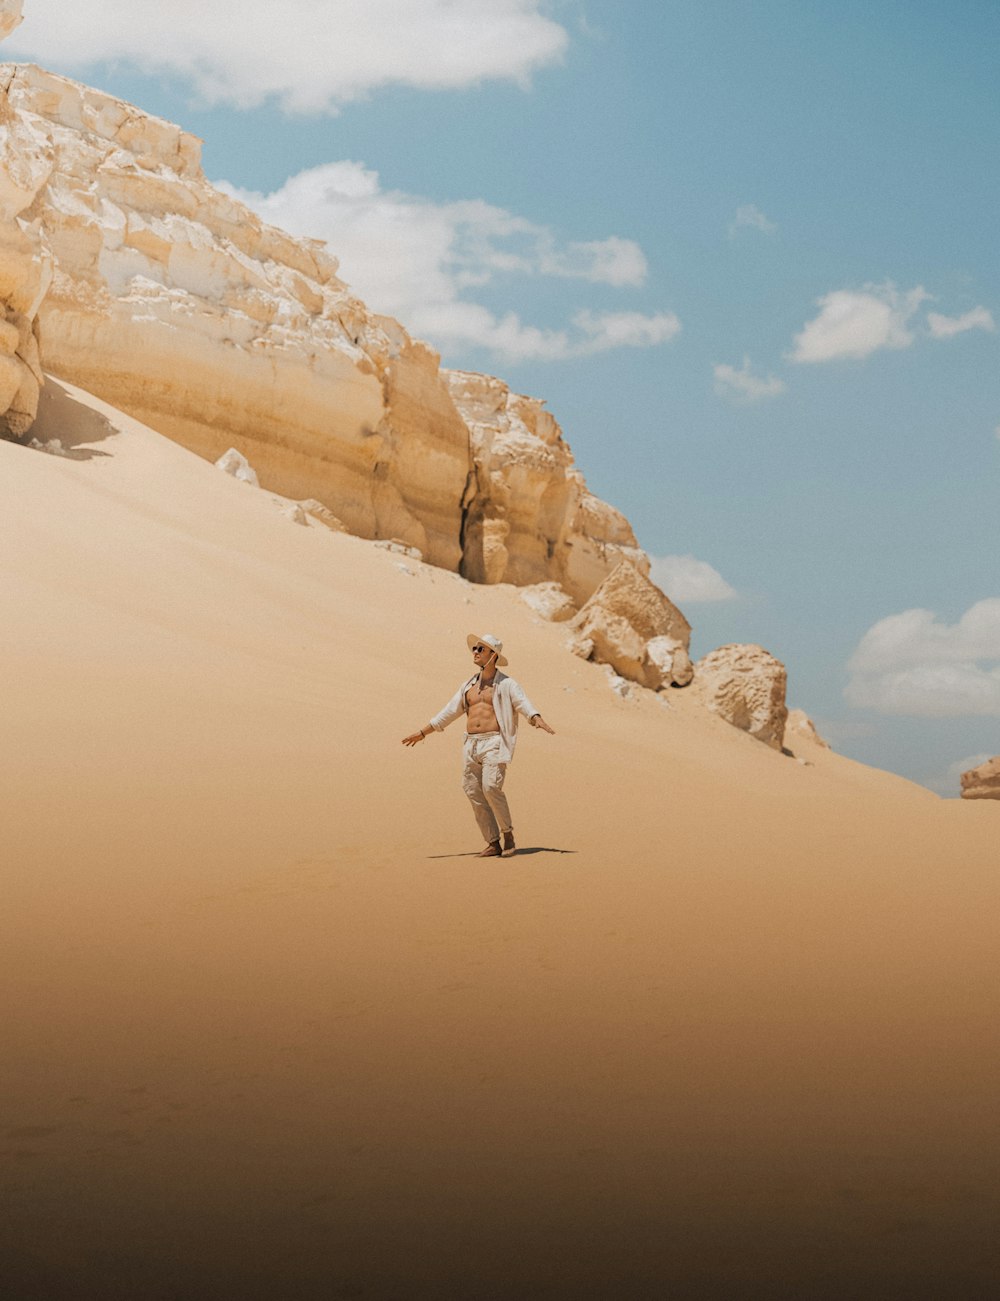 a man walking across a sandy desert under a blue sky